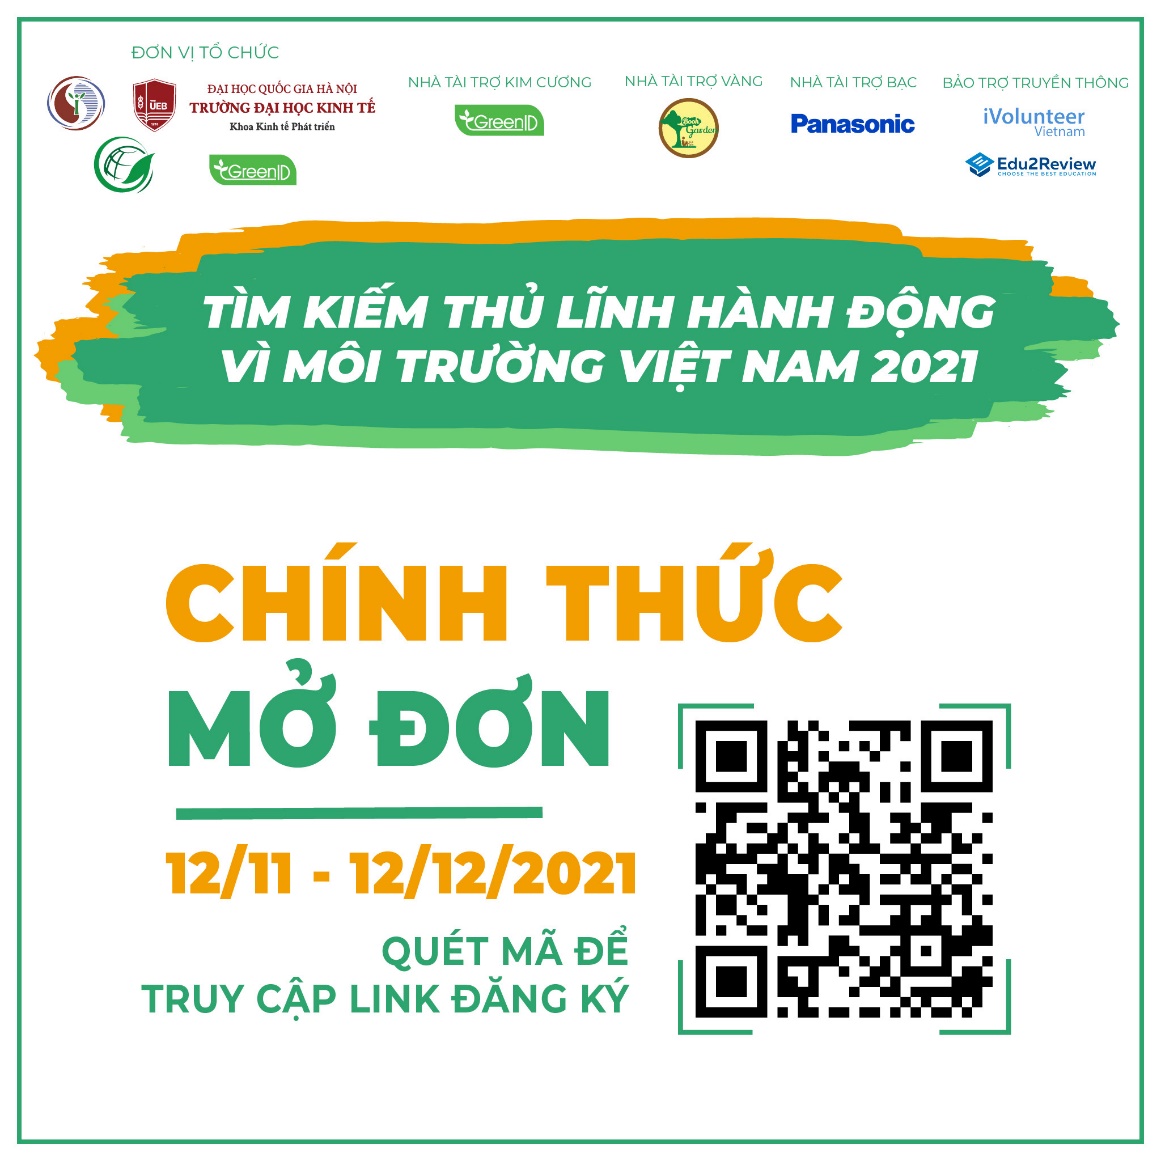 Cuộc thi “Tìm kiếm thủ lĩnh hành động vì môi trường Việt Nam 2021”  